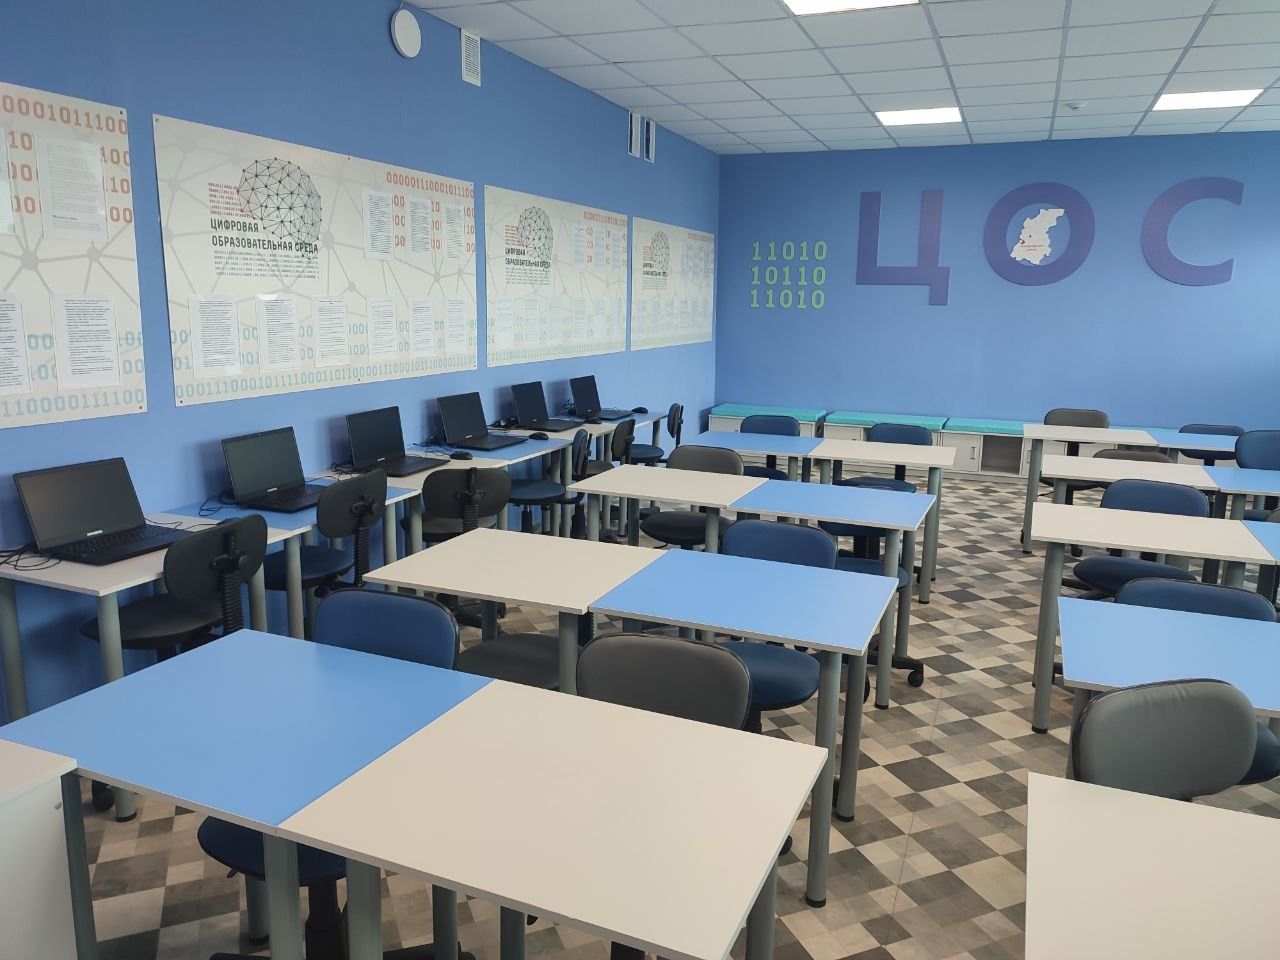 Цифровое оборудование появится в 120 кабинетах школ Нижегородской области - фото 1